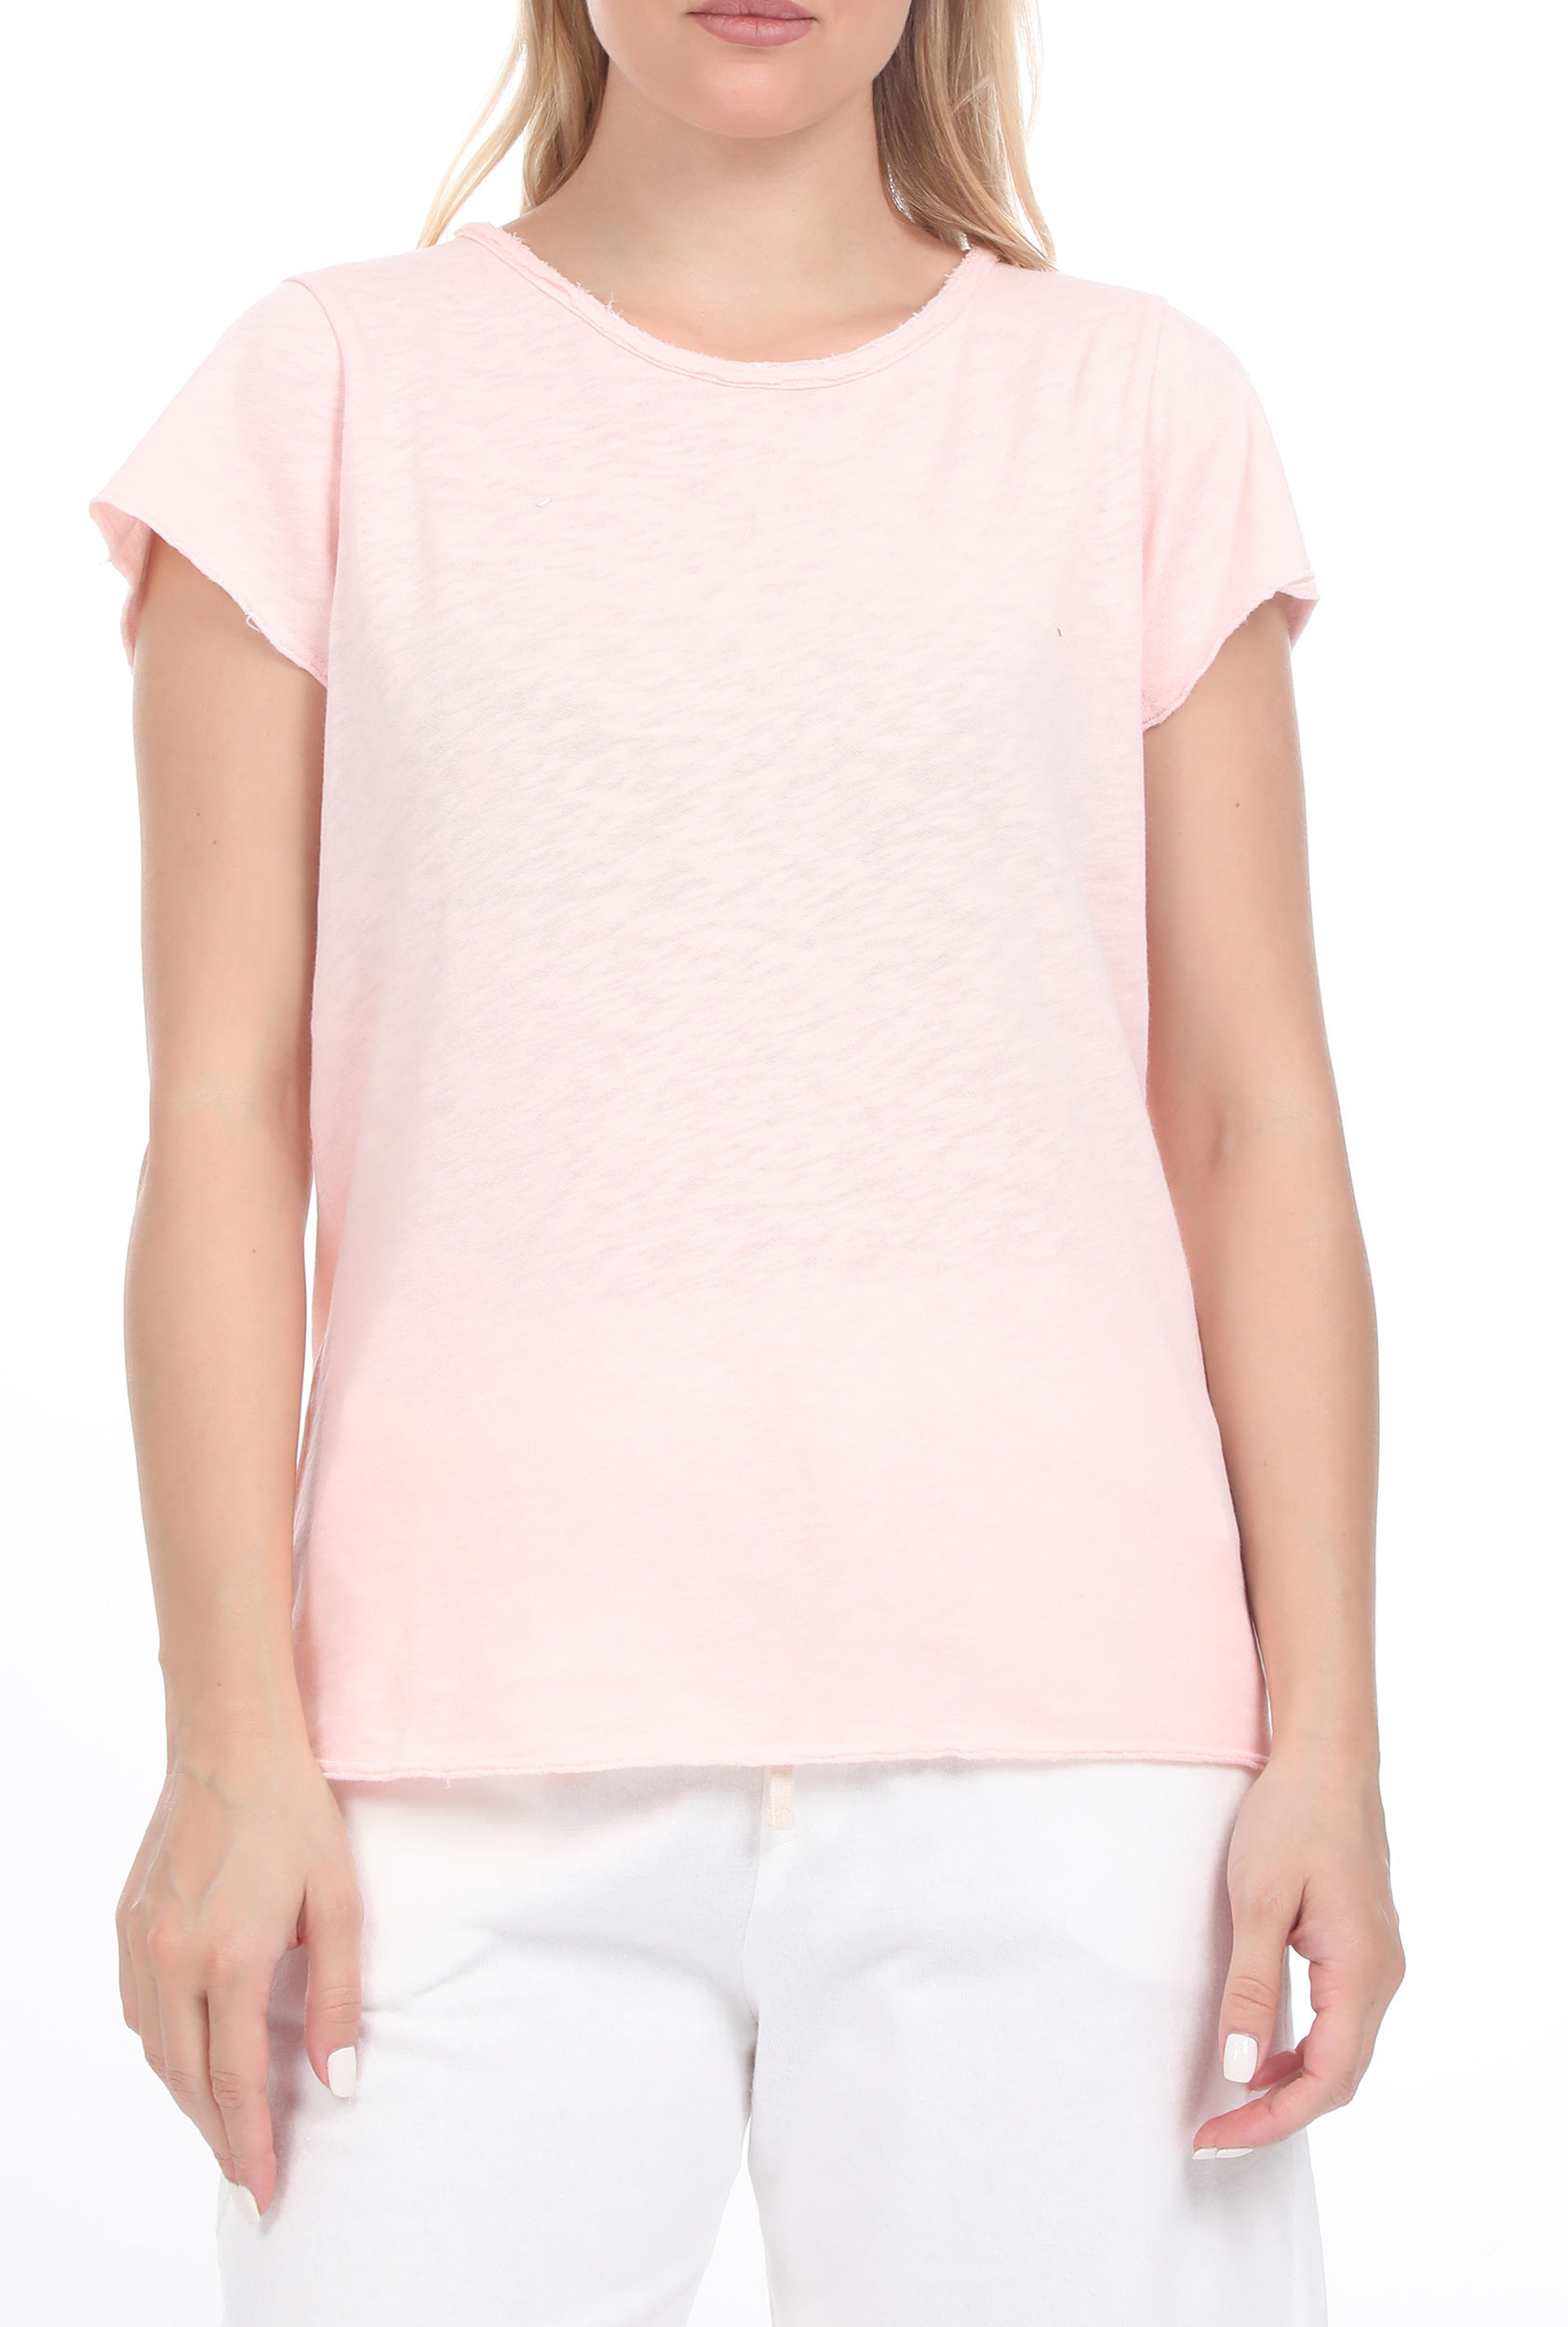 Γυναικεία/Ρούχα/Μπλούζες/Κοντομάνικες AMERICAN VINTAGE - Γυναικεία μπλούζα AMERICAN VINTAGE ροζ